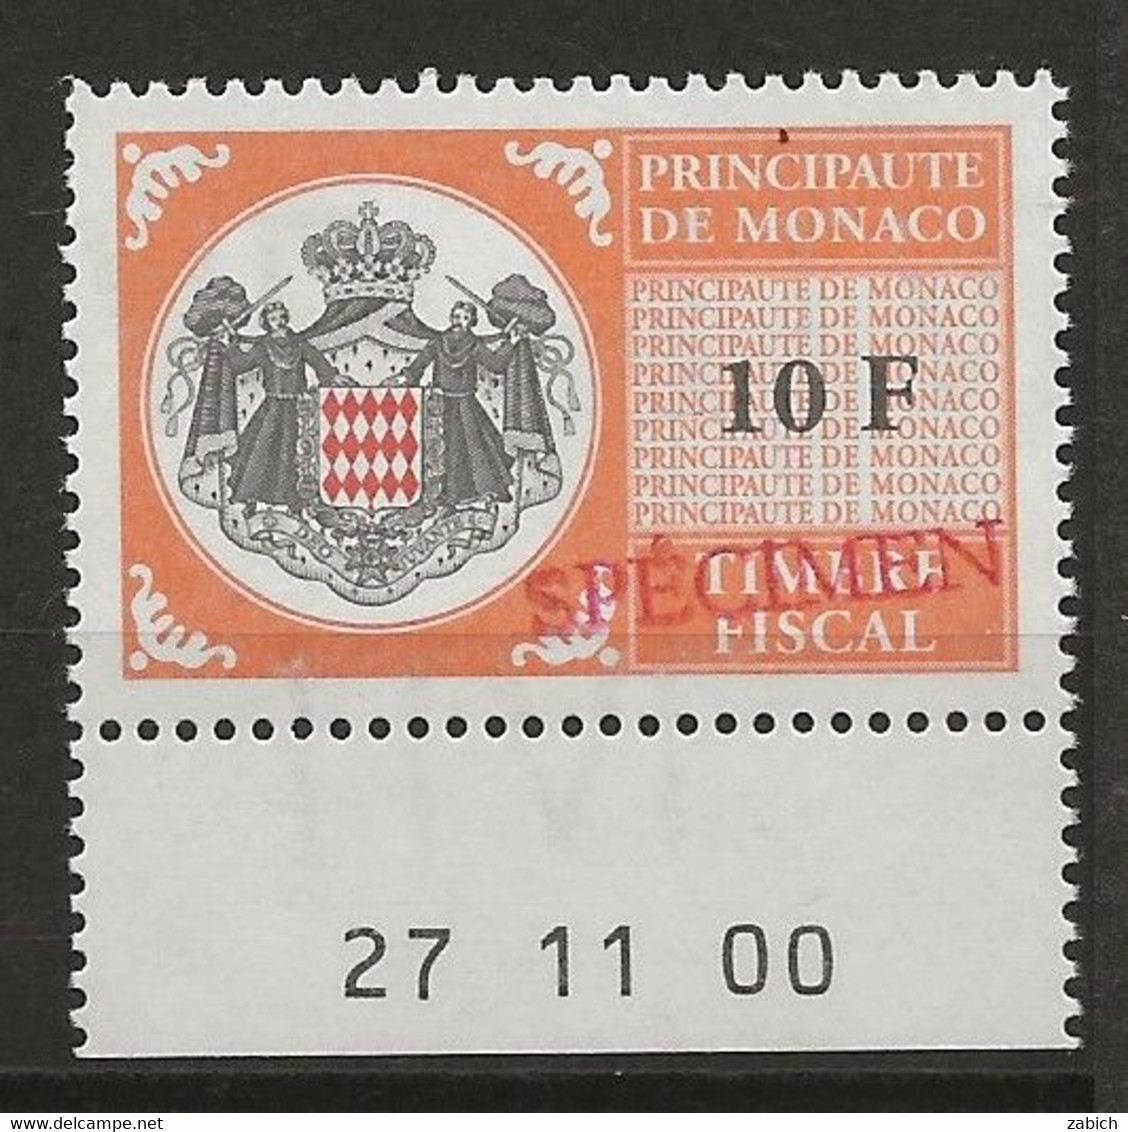 FISCAUX DE MONACO SERIE UNIFIEE N° 102 10Forange Rare Coin Daté Du 27 11 00 Surchargé Spécimen Neuf Gomme Mnh (**) - Steuermarken